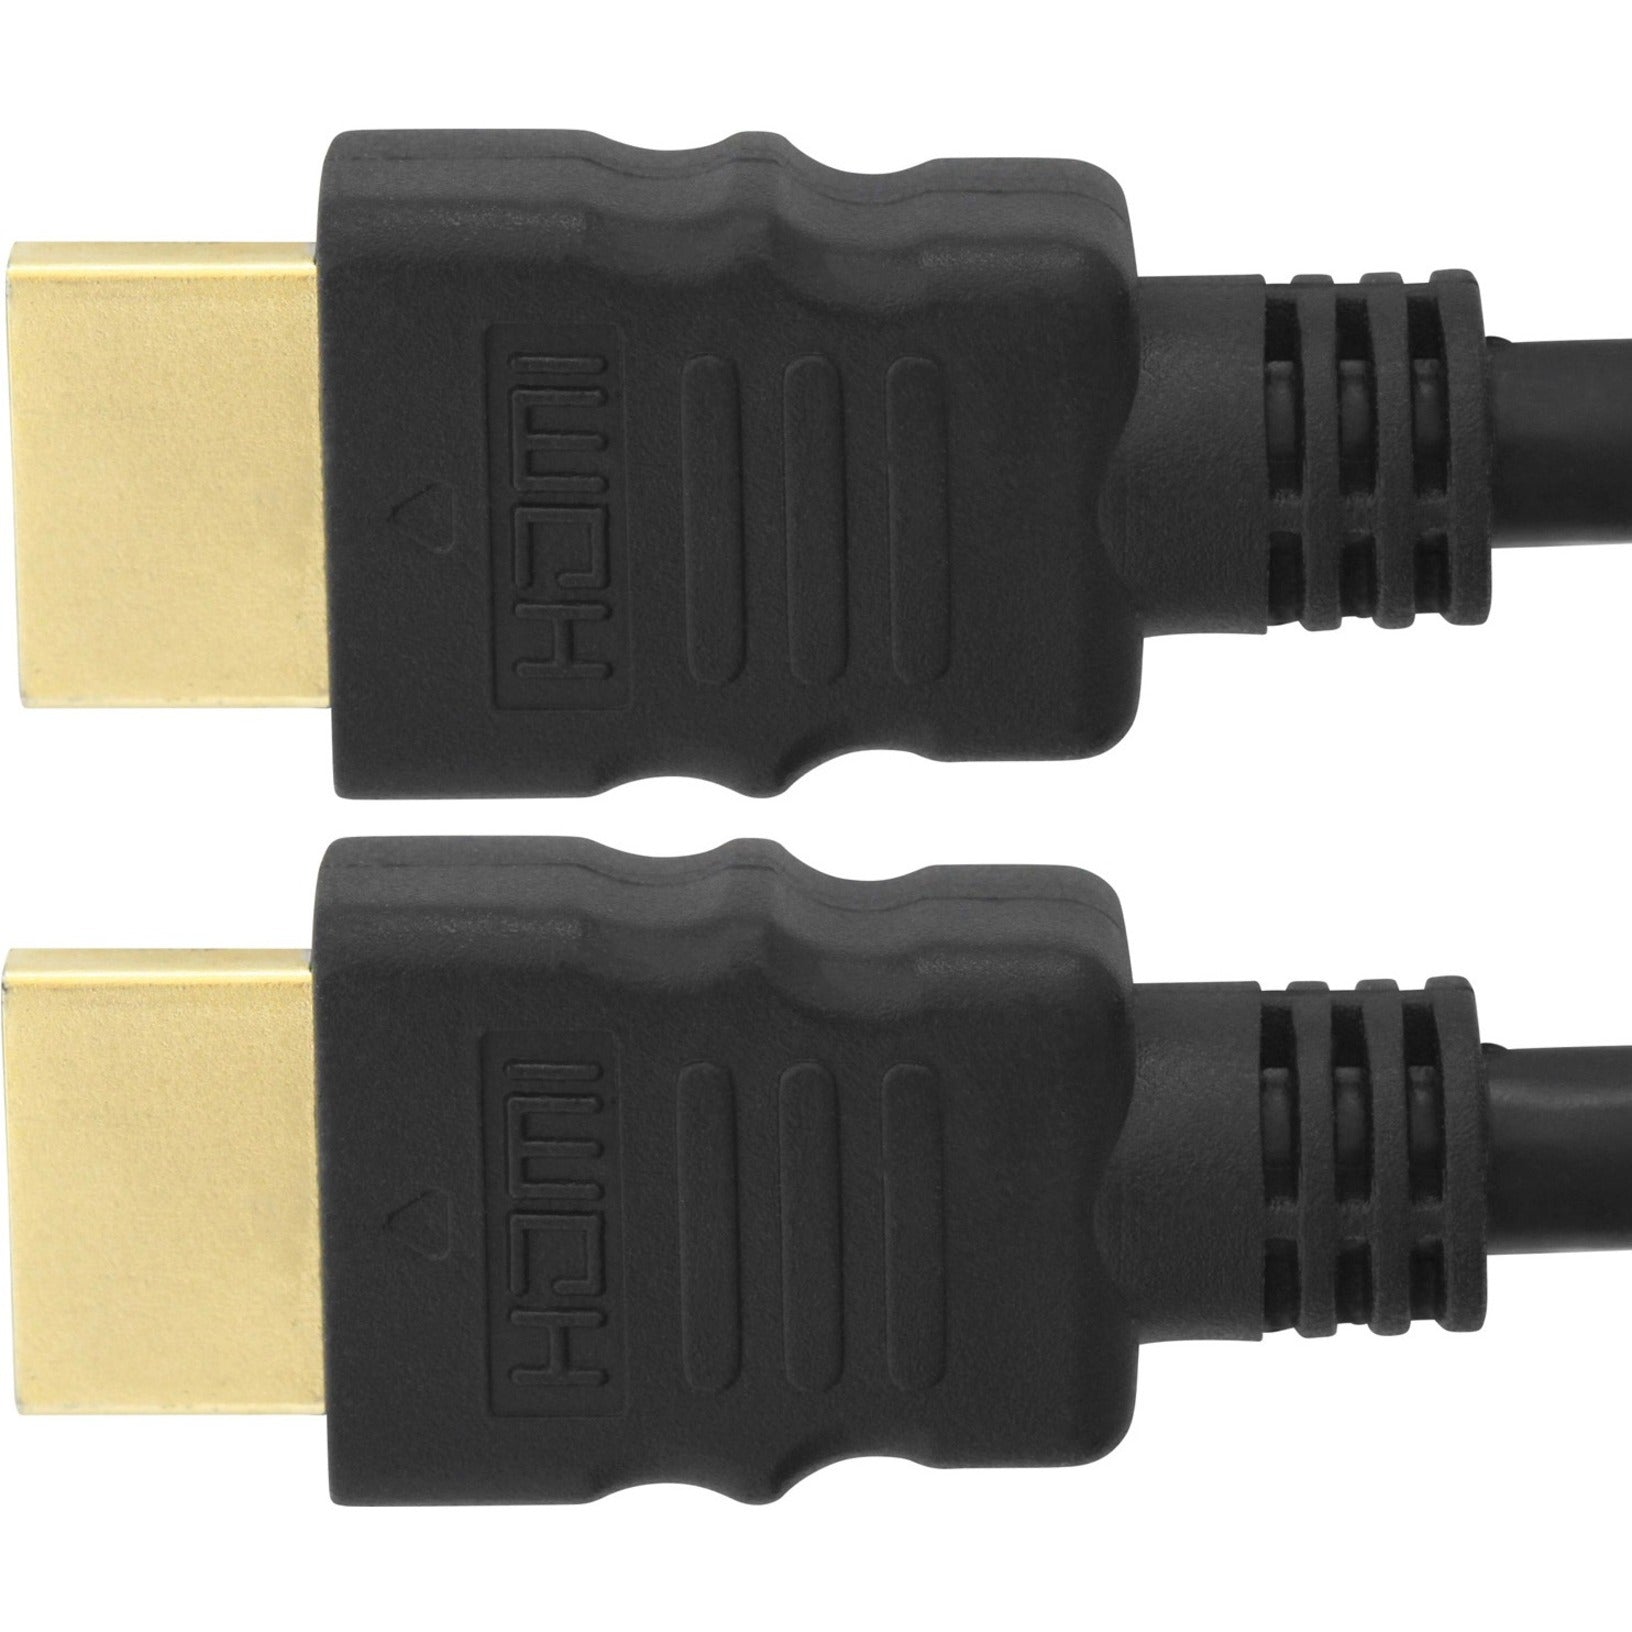 4XEM 4XHDMIMM15FT 15ft 5m Cable HDMI de alta velocidad 1080p 3D Ethernet Canal de Retorno de Audio. Marca: 4XEM - Traducir marca: 4XEM.